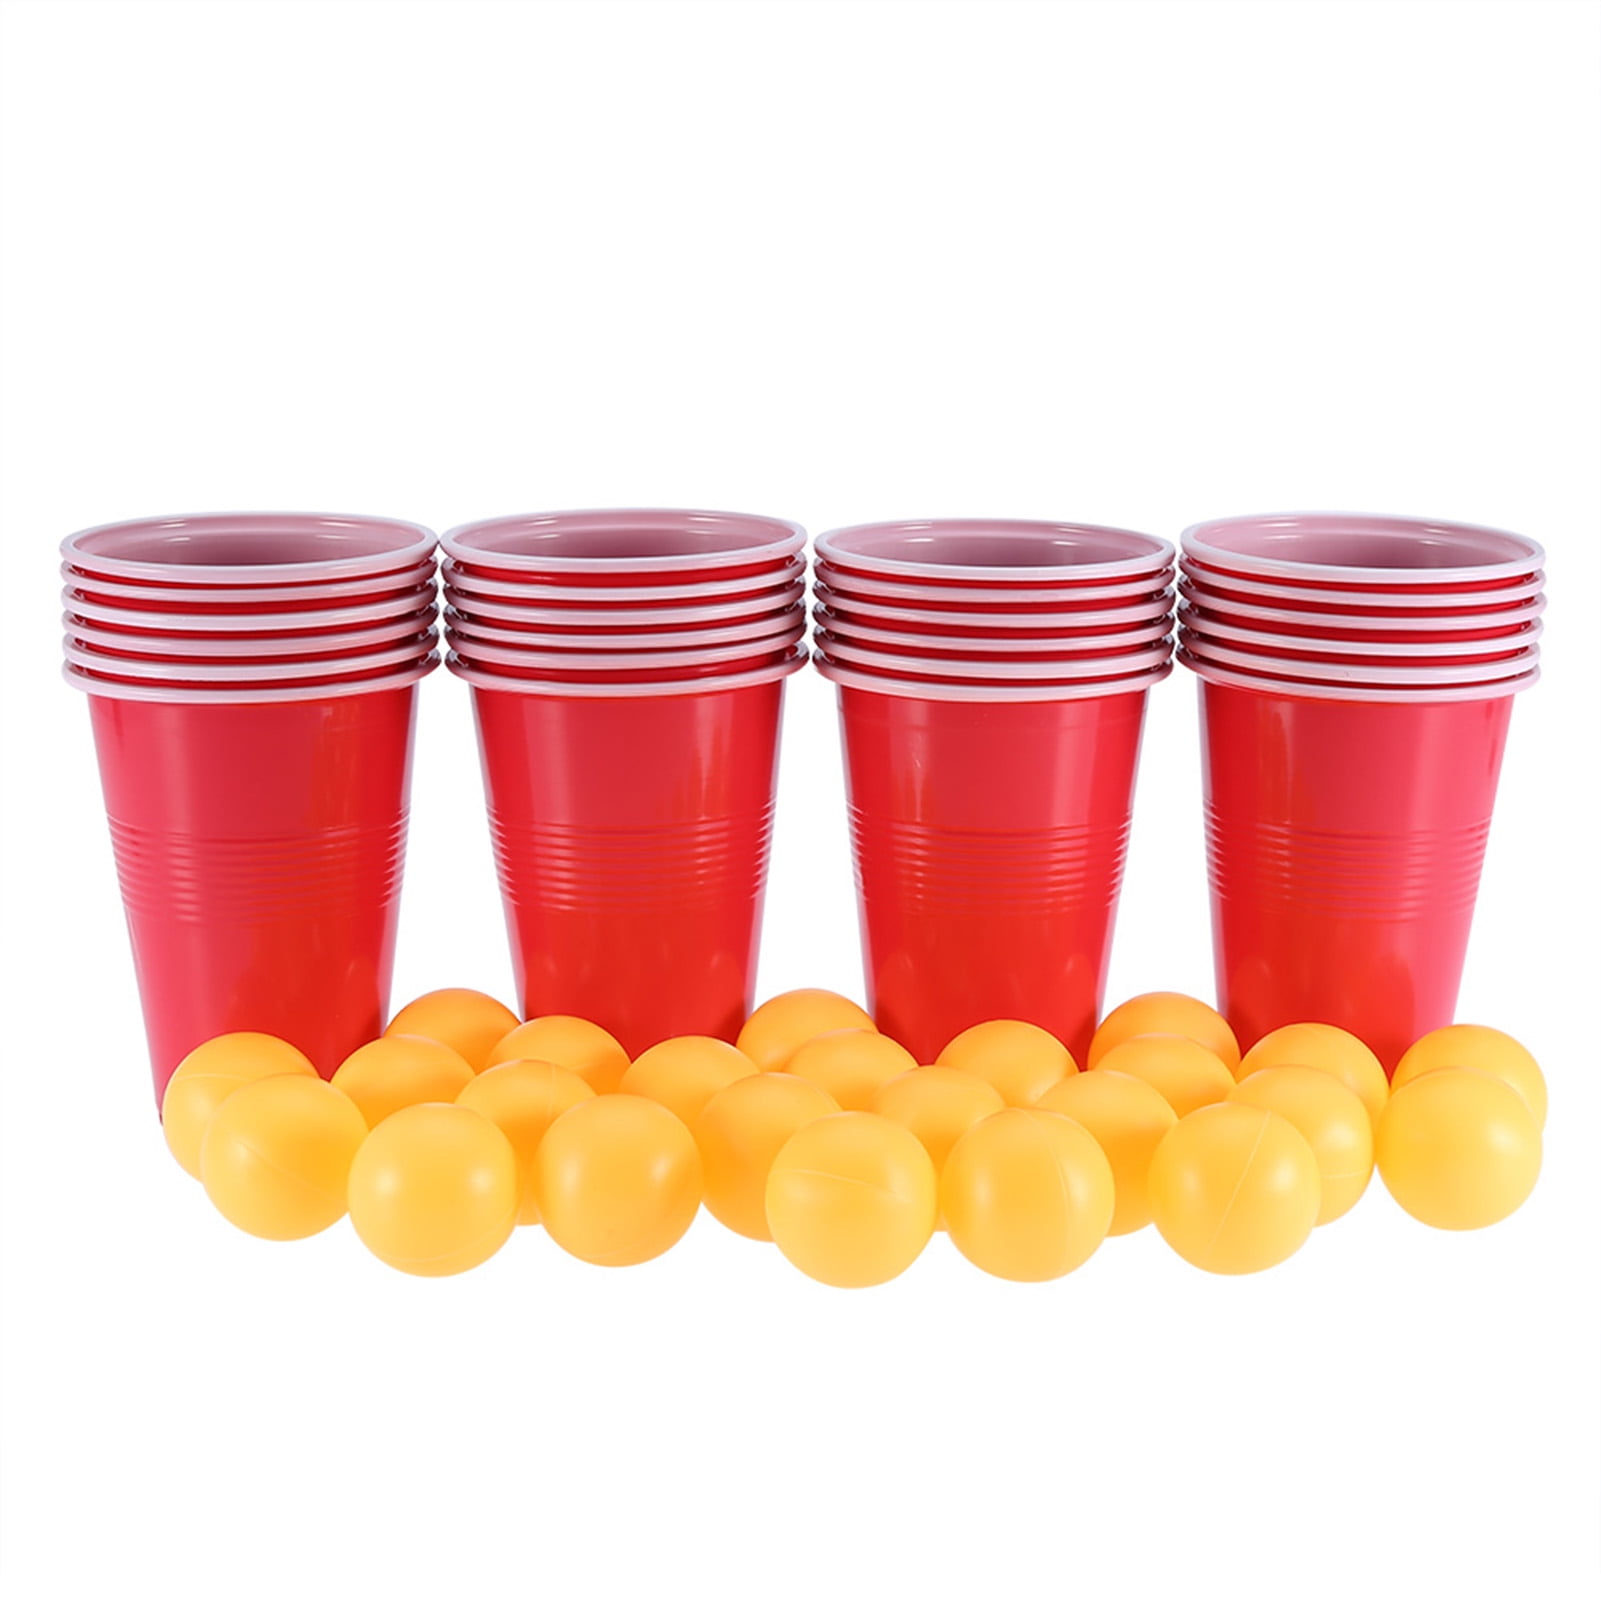 Красные стаканчики для вечеринки. Стаканы красные пластиковые для бир понга. Пинг понг со стаканчиками. Красный пивной стаканчик с шариками. 22 cups